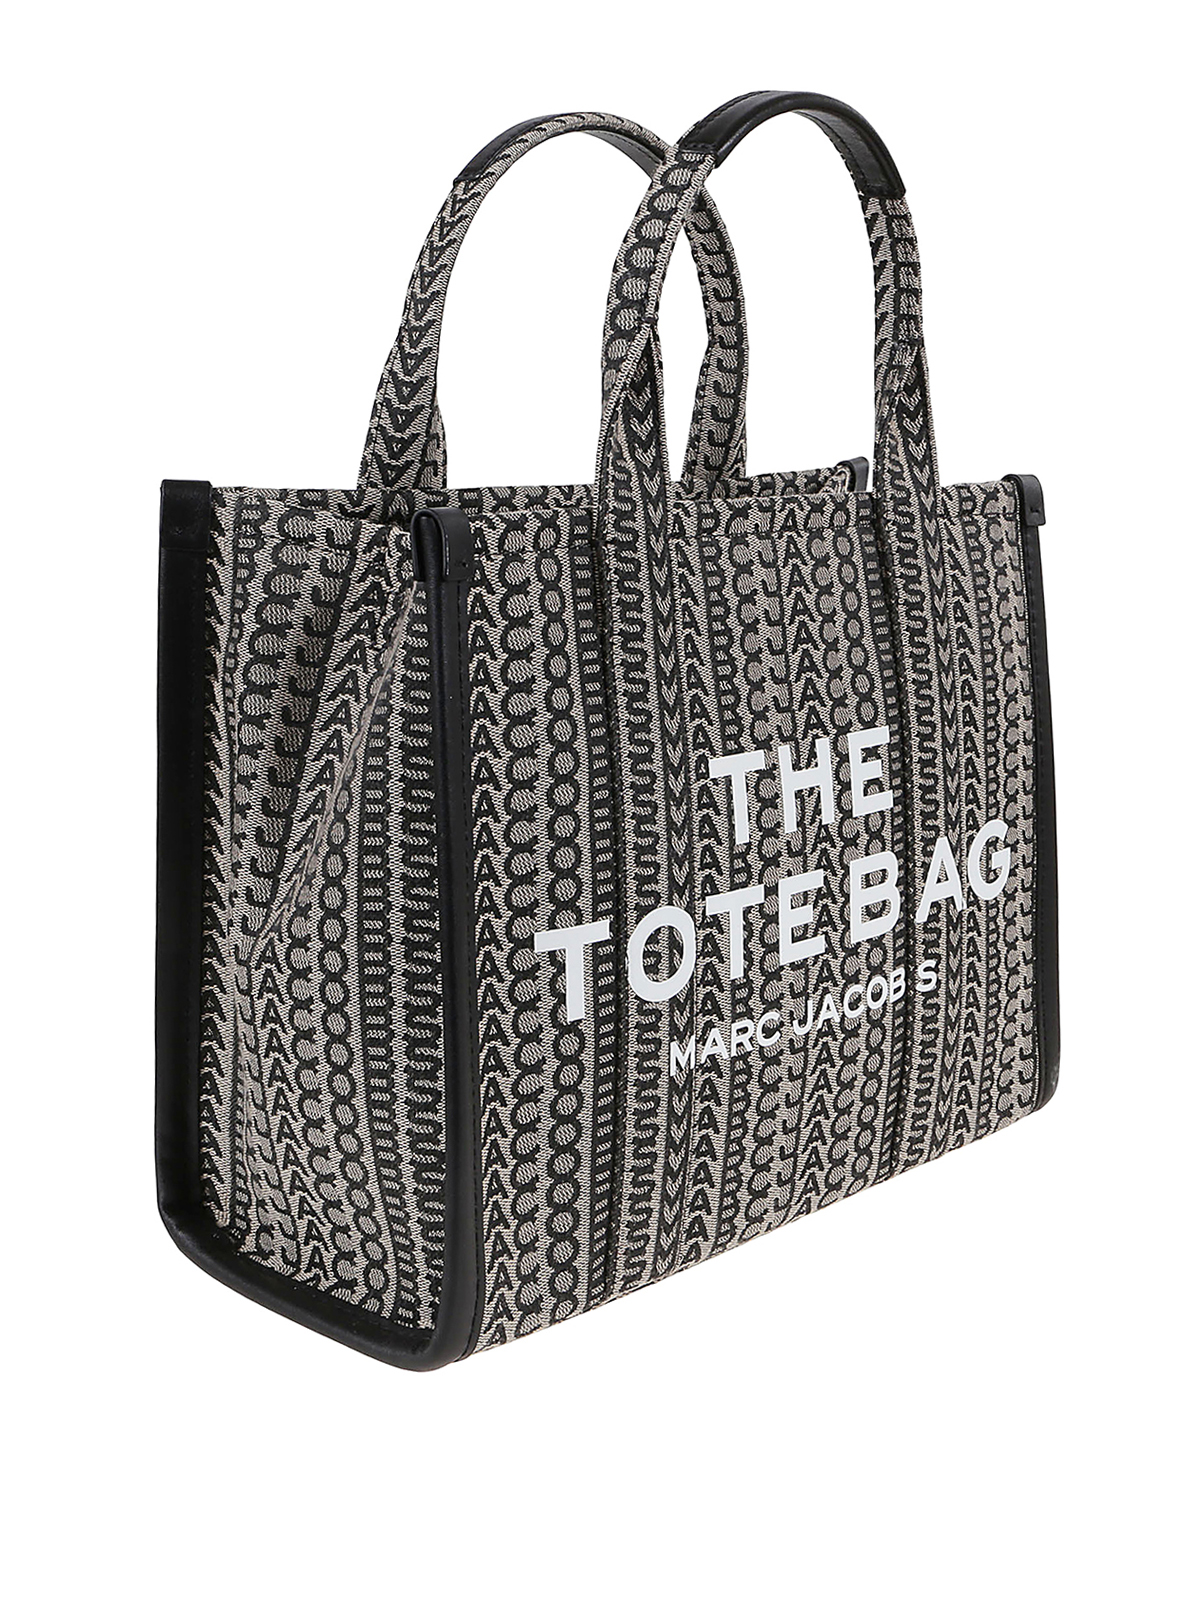 Shop Christy Ng Tote Bag online